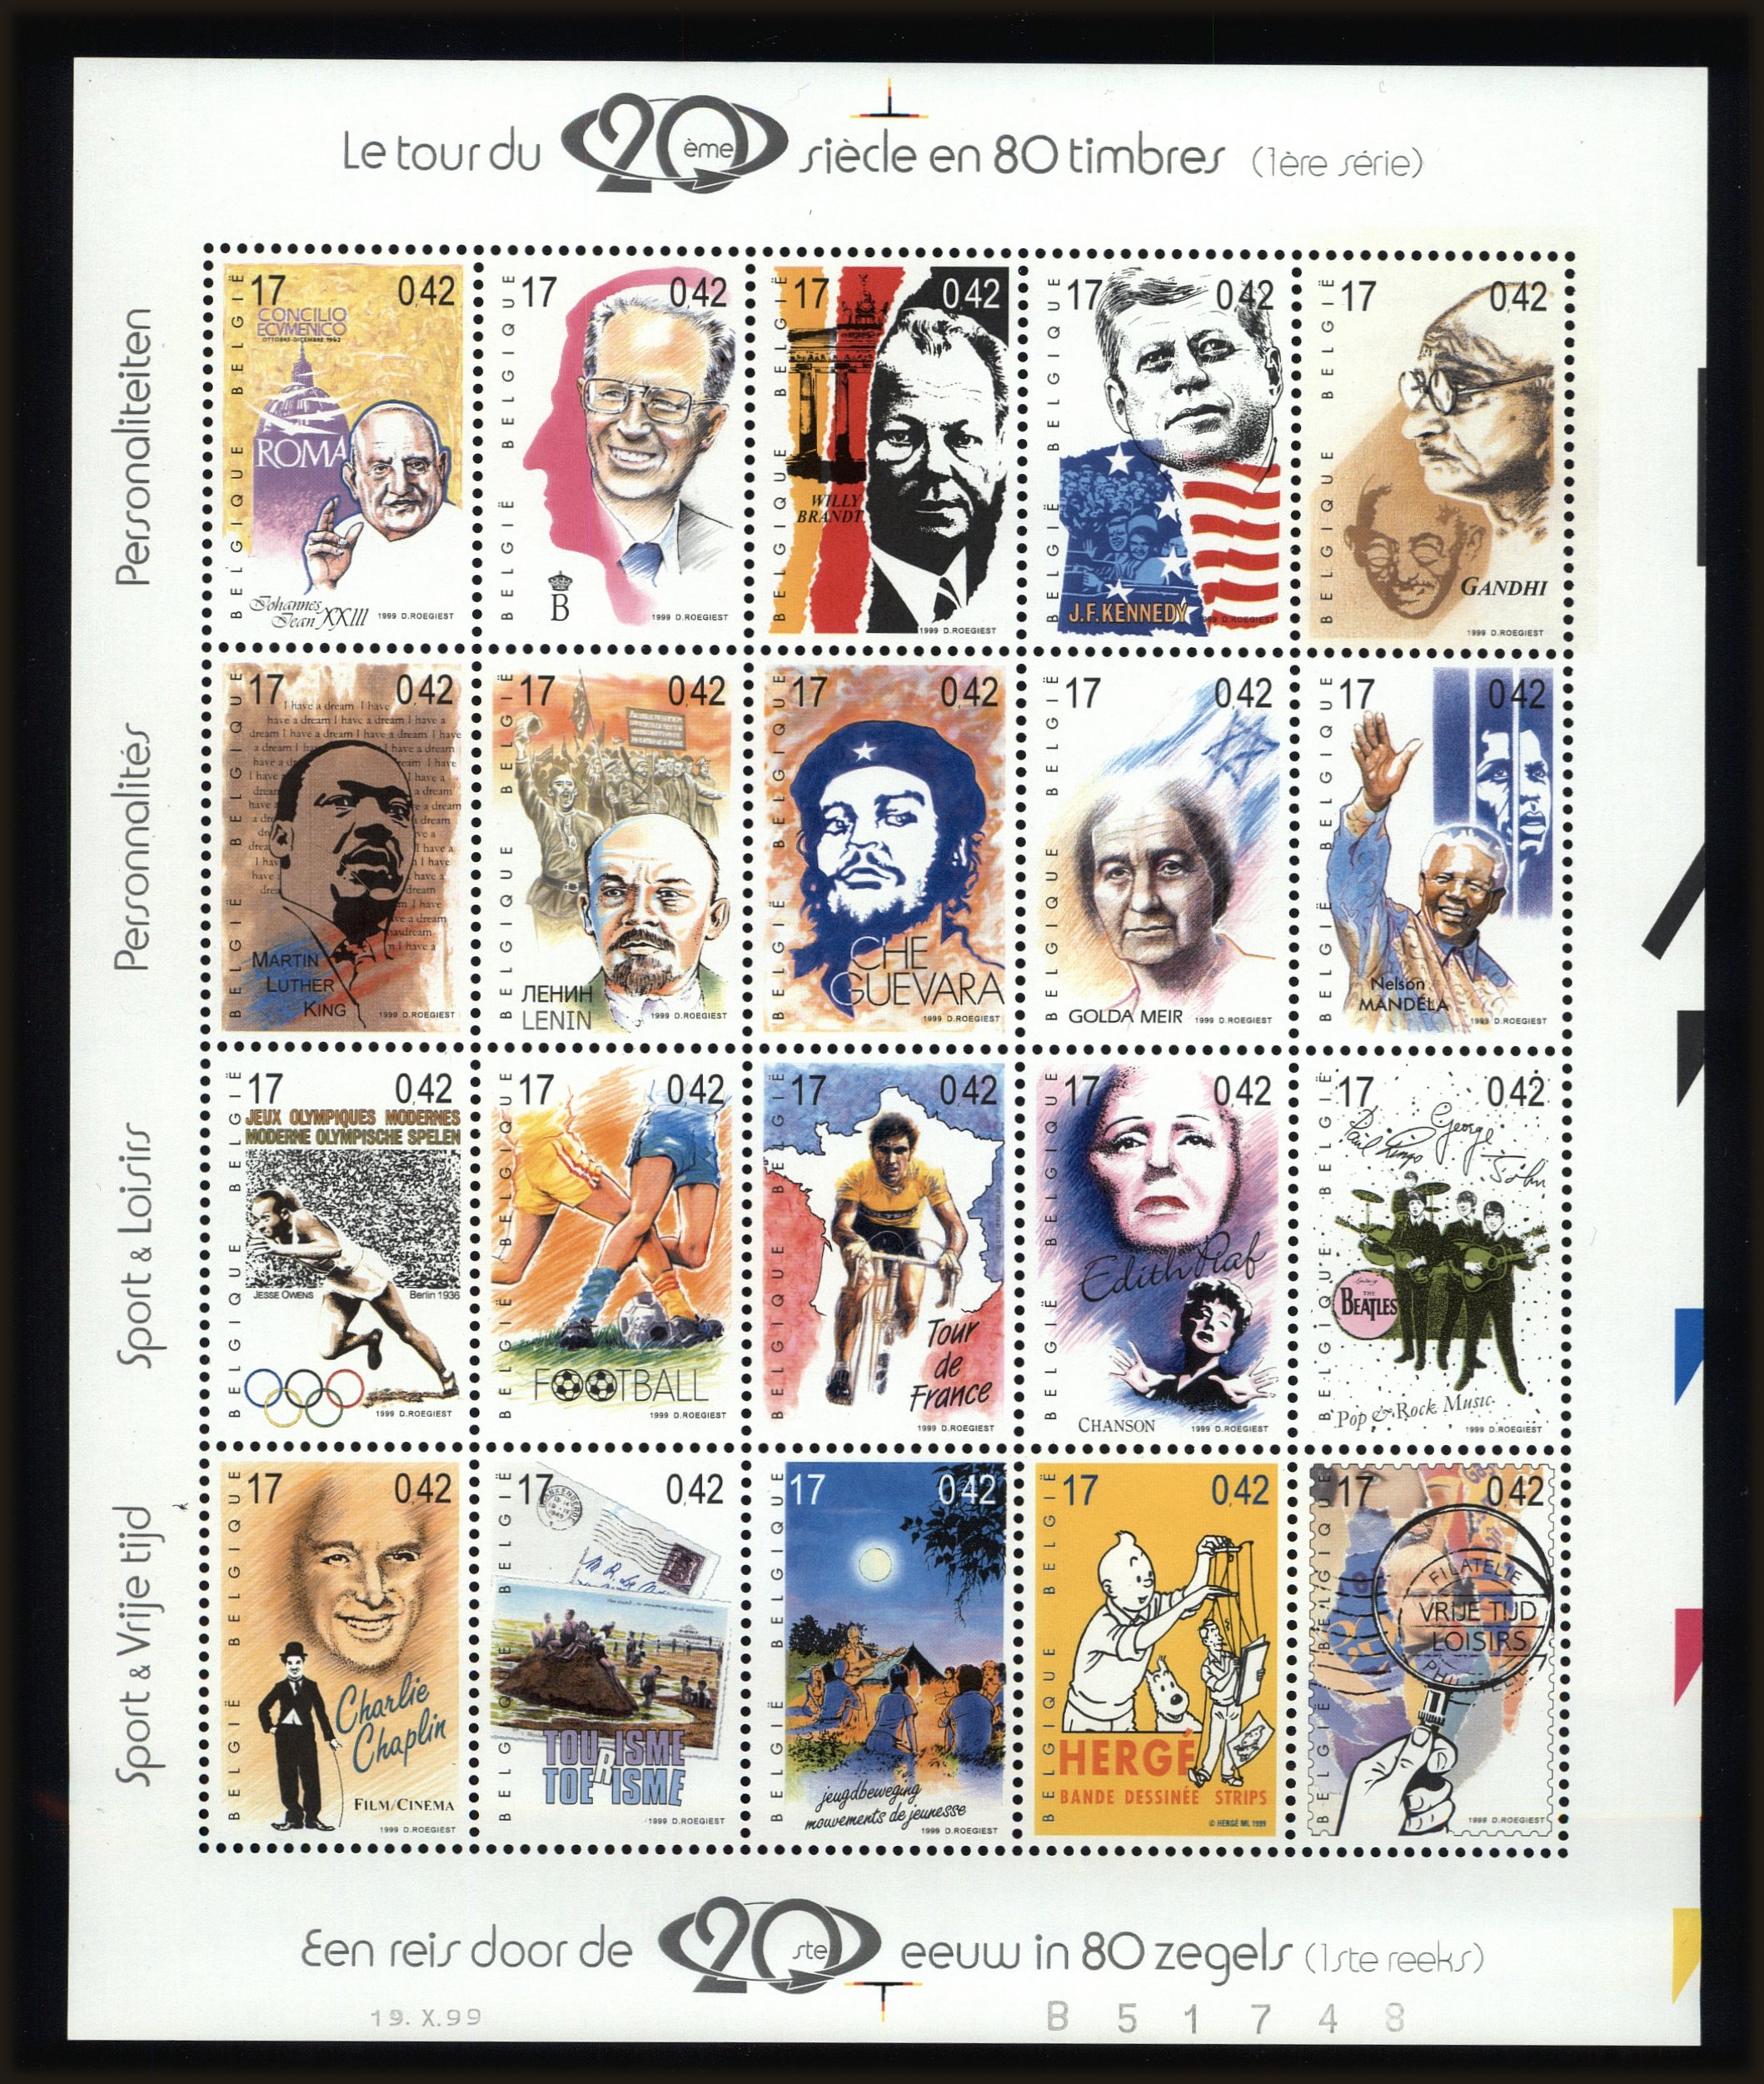 Front view of Belgium 1779 collectors stamp